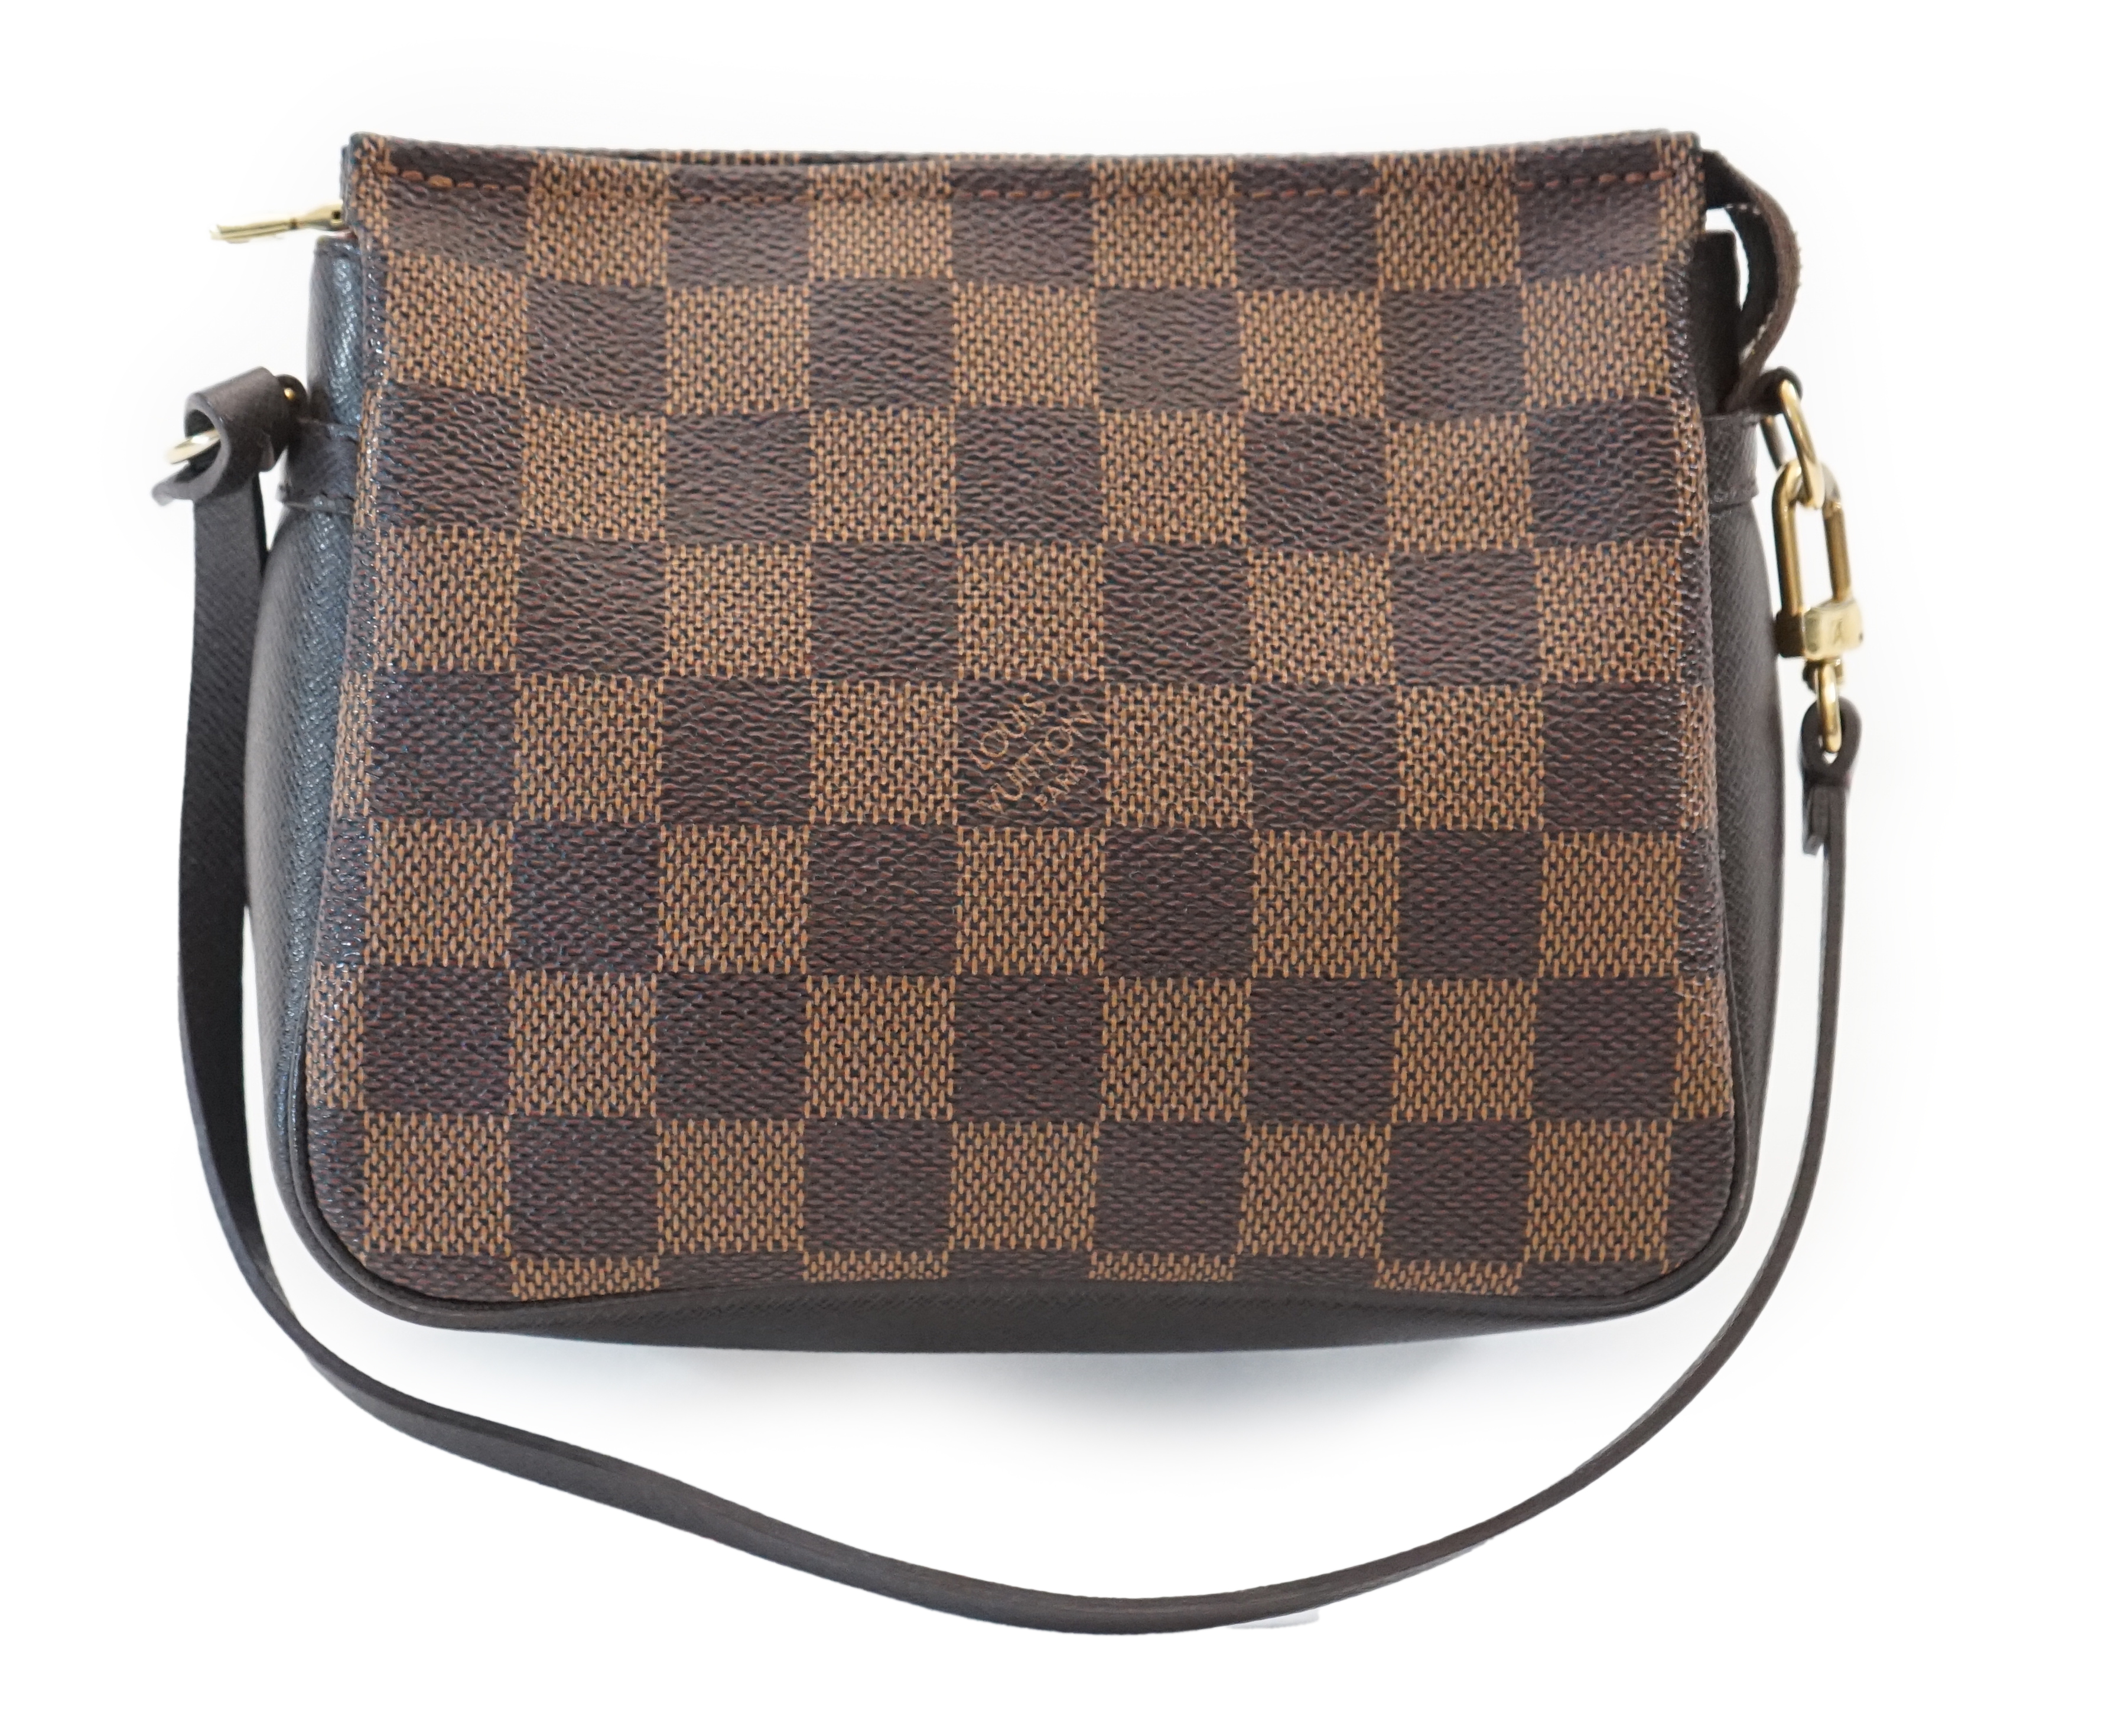 A Louis Vuitton Damier Ebene Pochette accessories bag, width 16cm, max depth 5cm, height 14cm